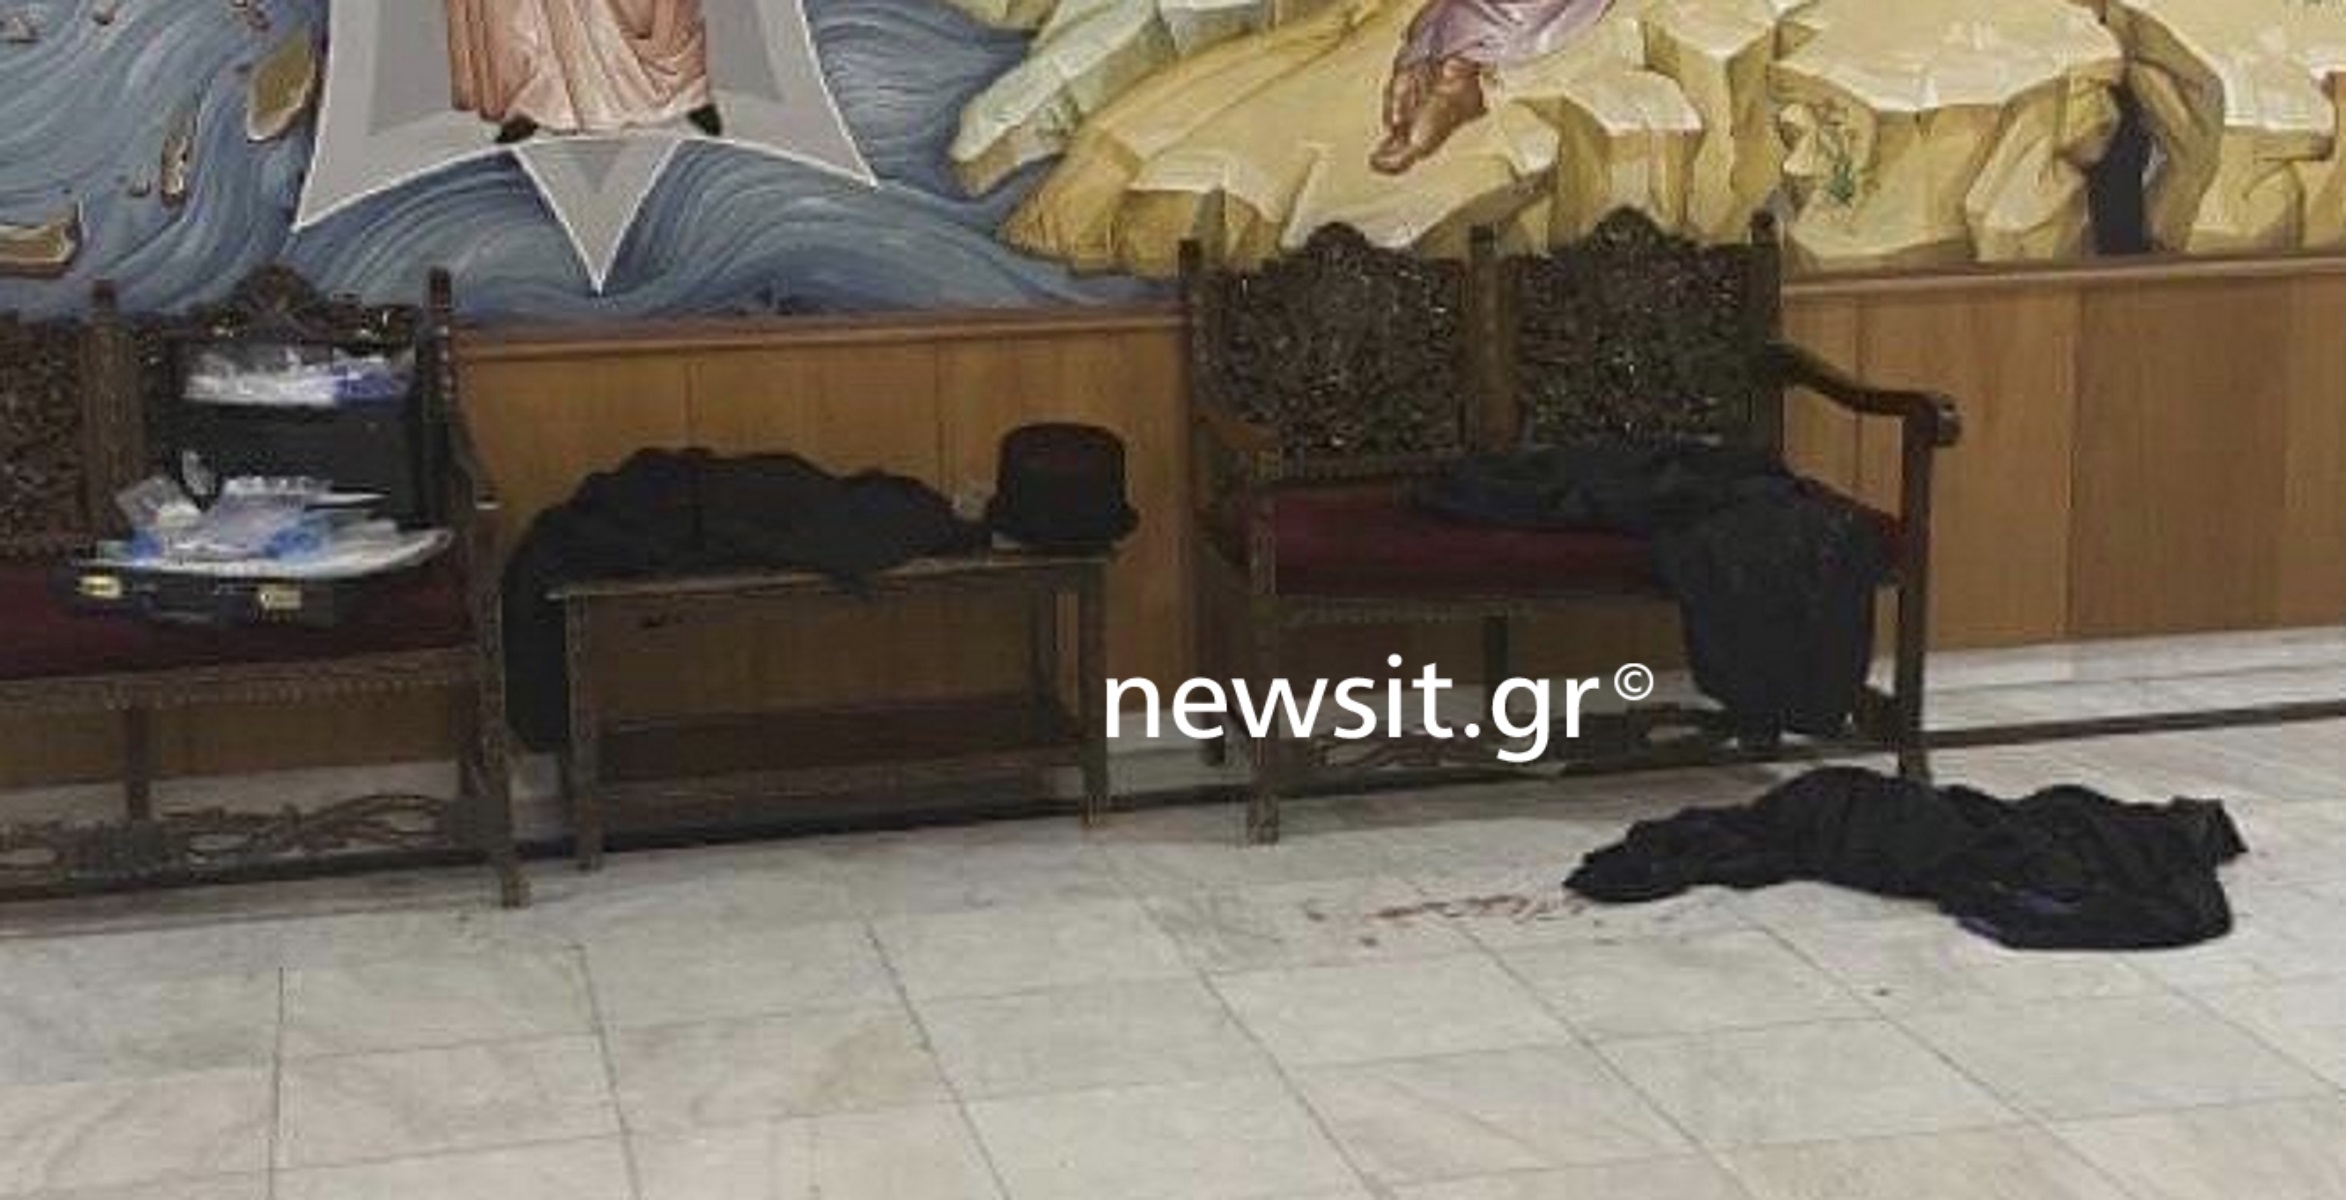 Μονή Πετράκη: Αίματα και ράσα στο πάτωμα – Οι πρώτες εικόνες μετά την επίθεση στους Μητροπολίτες